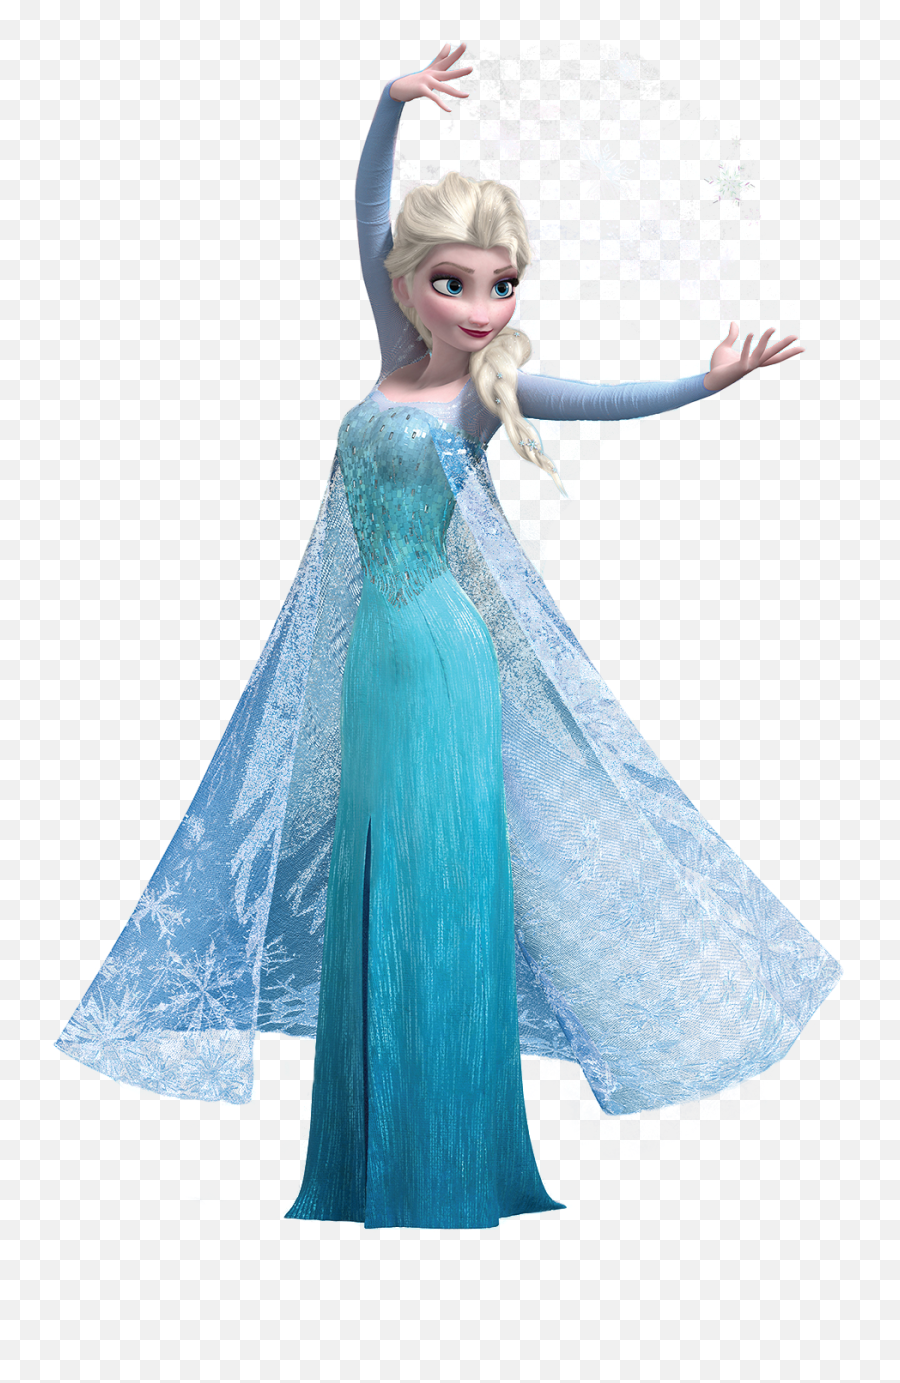 Elsa Png Transparent Image - Elsa Frozen Png,Elsa Transparent